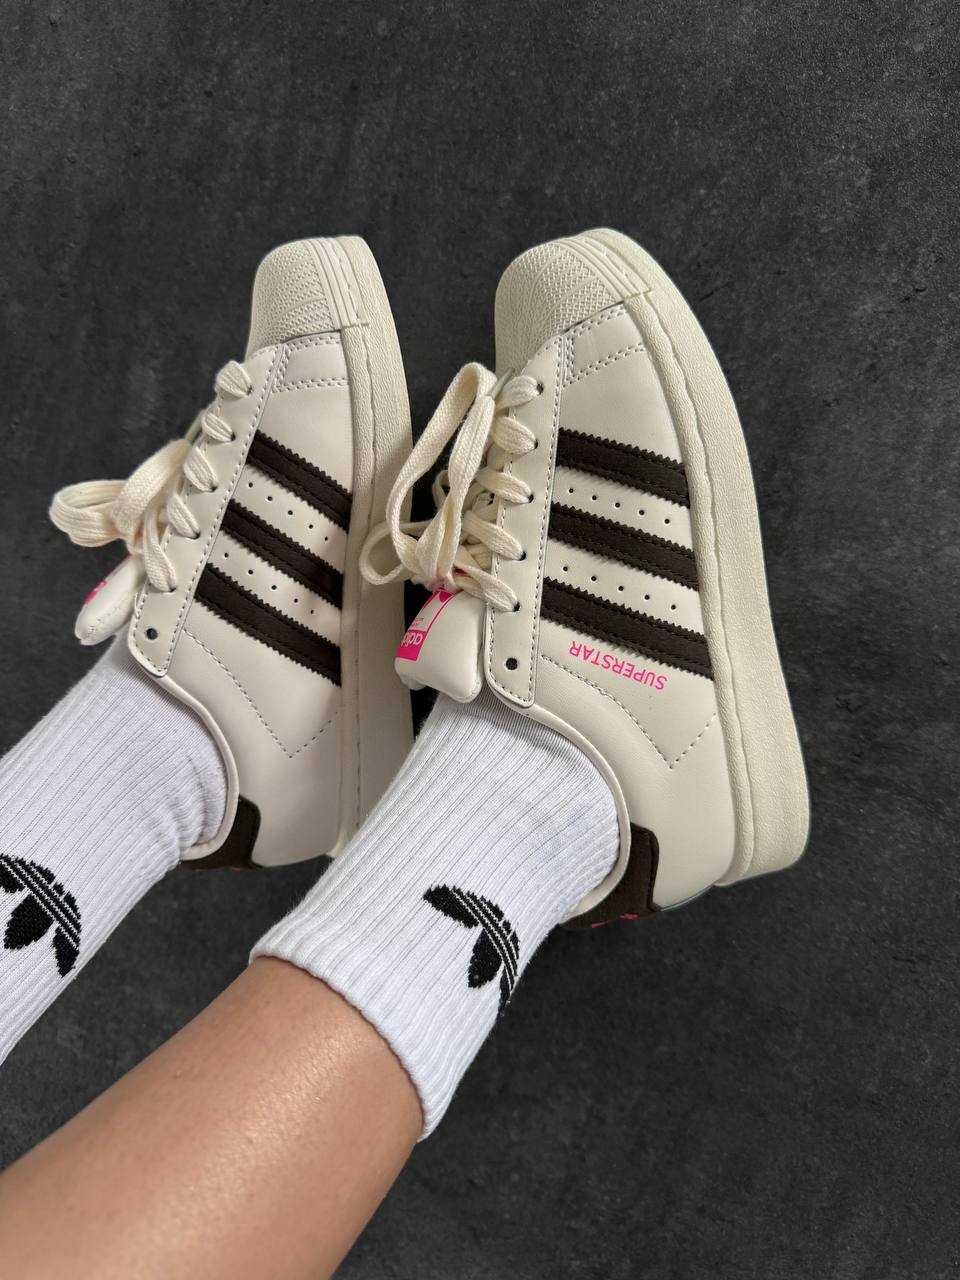 Женские кроссовки Adidas Superstar Cream Black Pink 36-41 Наложка! Топ